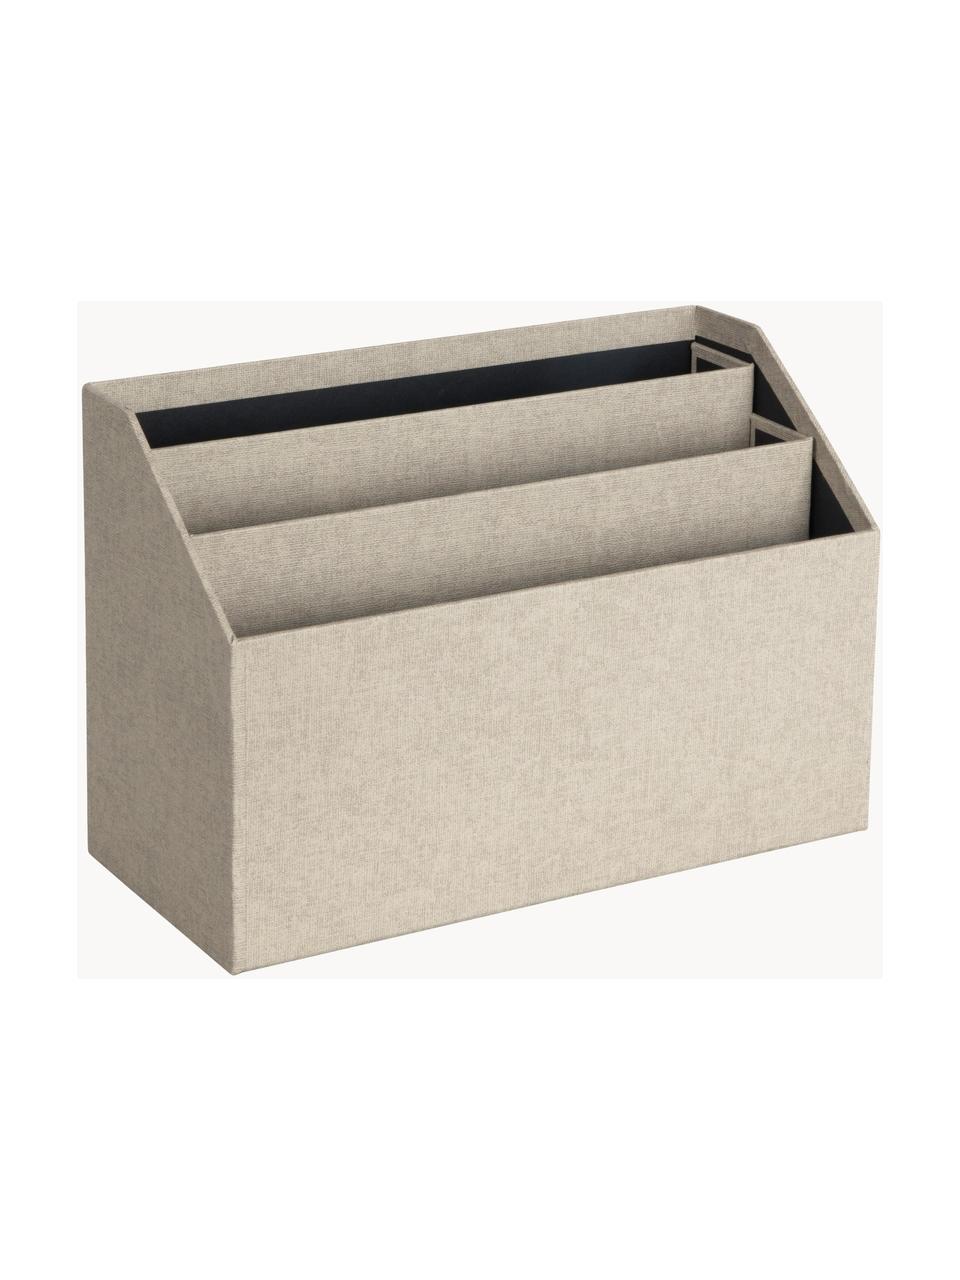 Organiseur bureau Hector, Toile, solide carton
(100 % papier recyclé), Beige, larg. 33 x prof. 16 cm